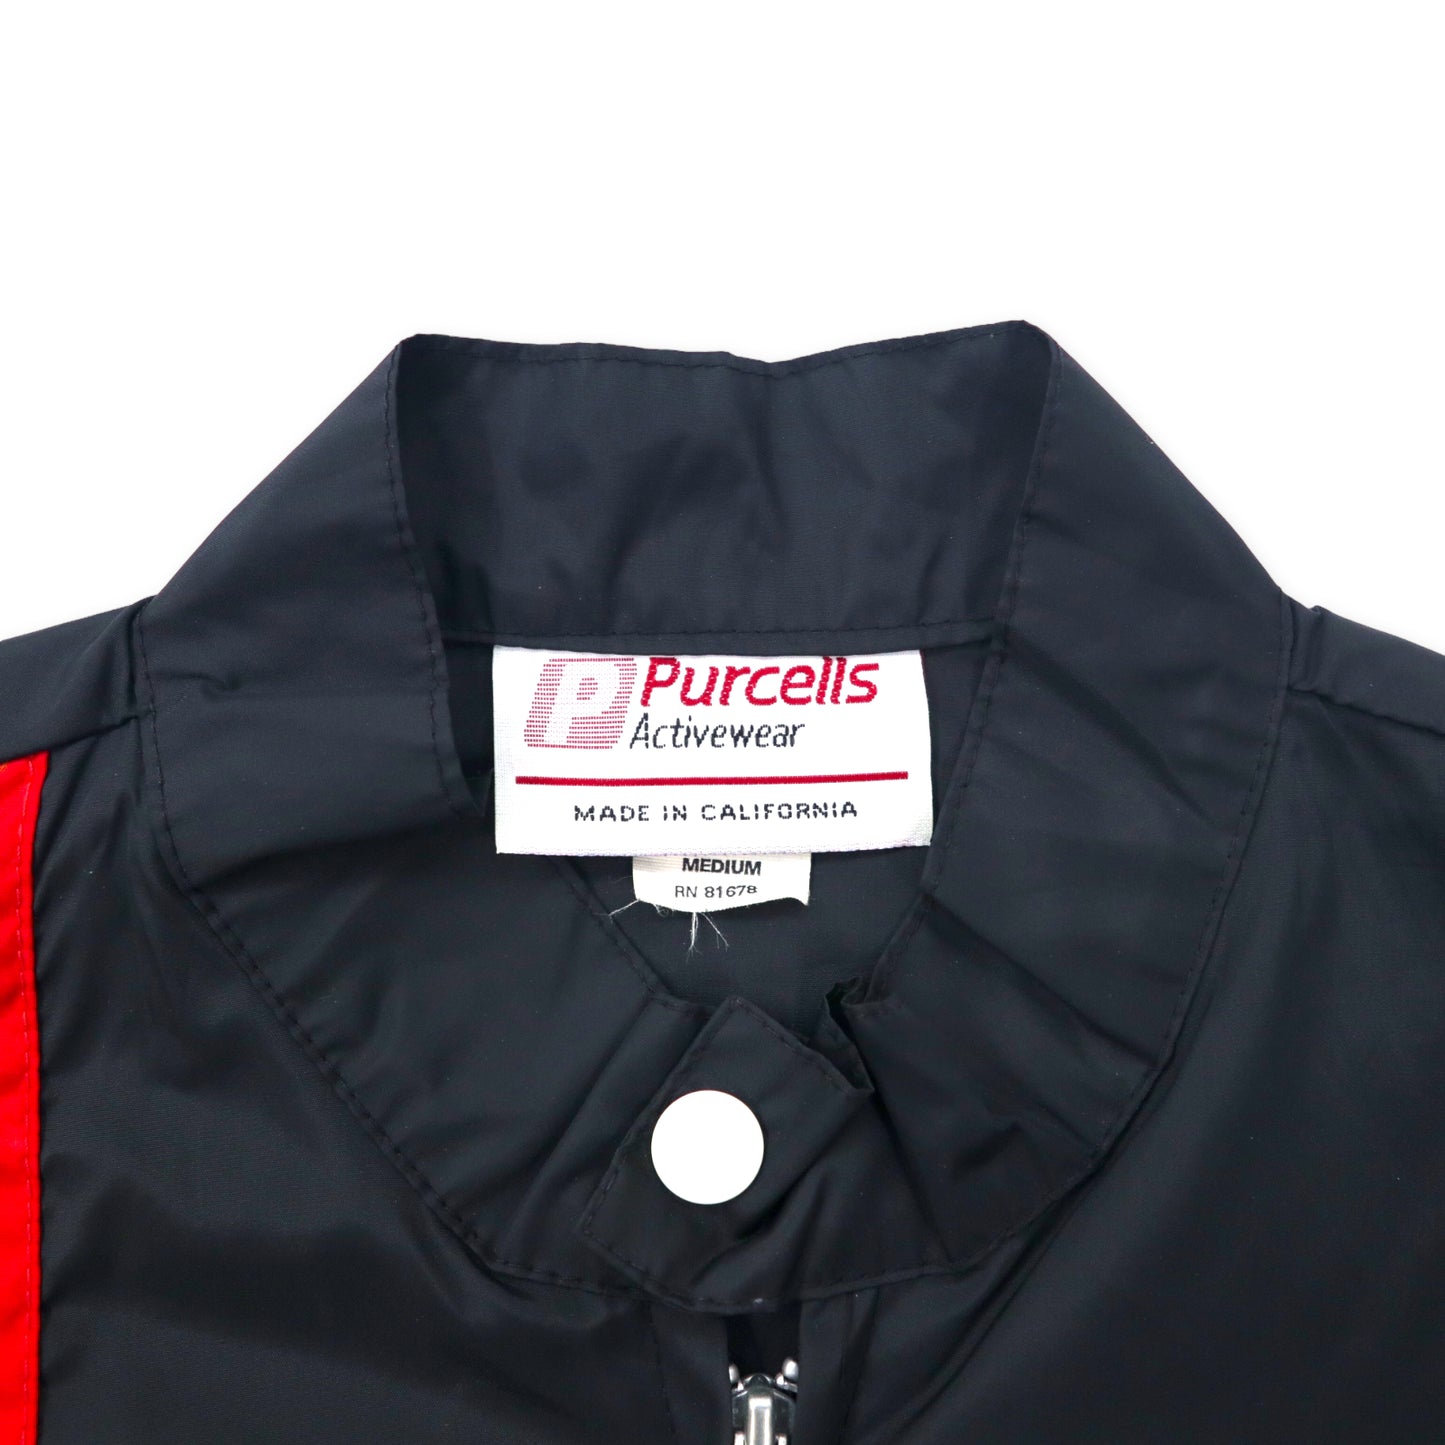 Purcells Activewear USA製 スウィングトップ レーシングジャケット M ブラック ナイロン